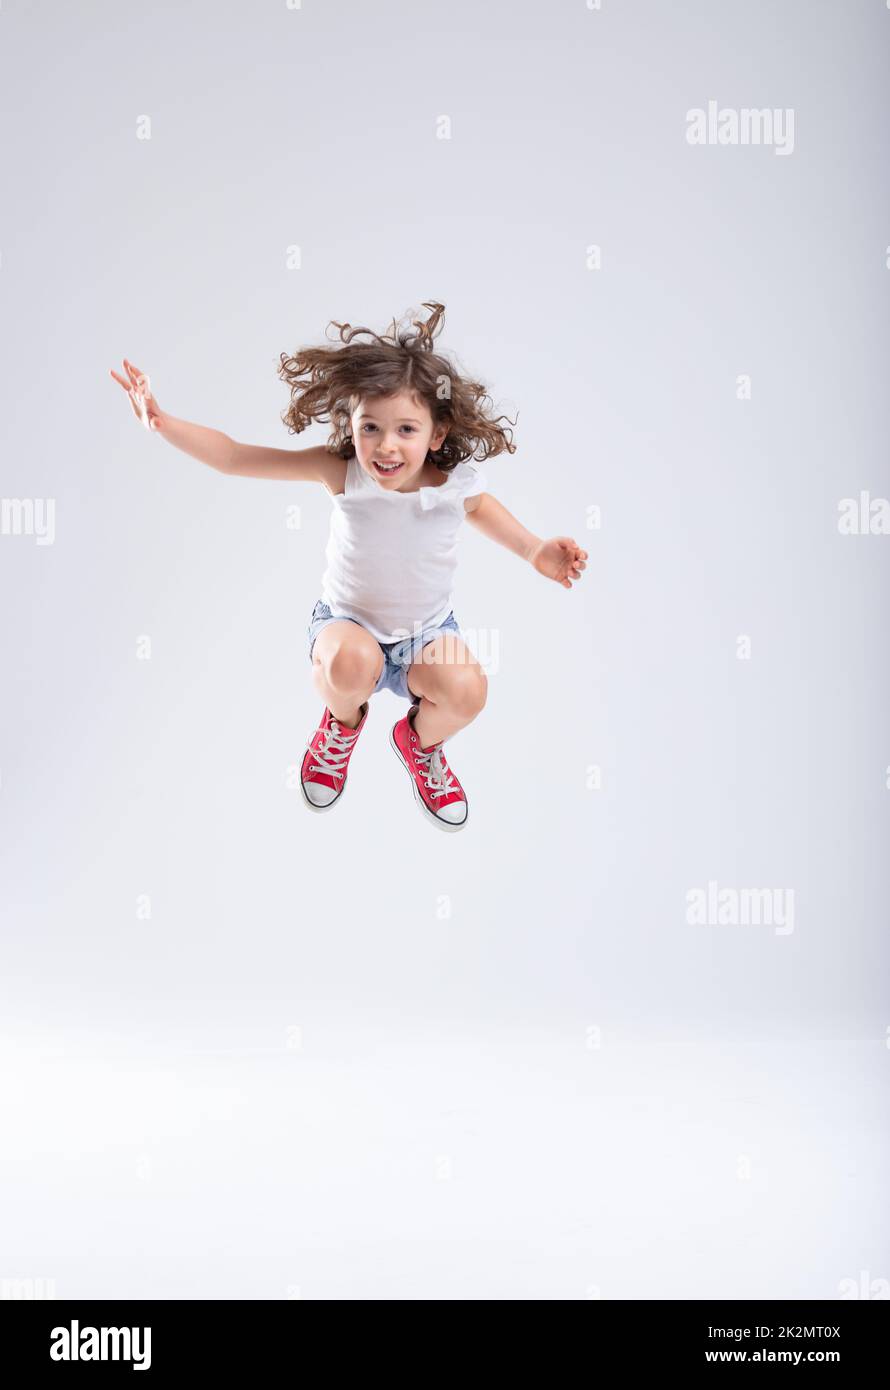 Ein energiegeladenes kleines Mädchen, das hoch in die Luft springt Stockfoto